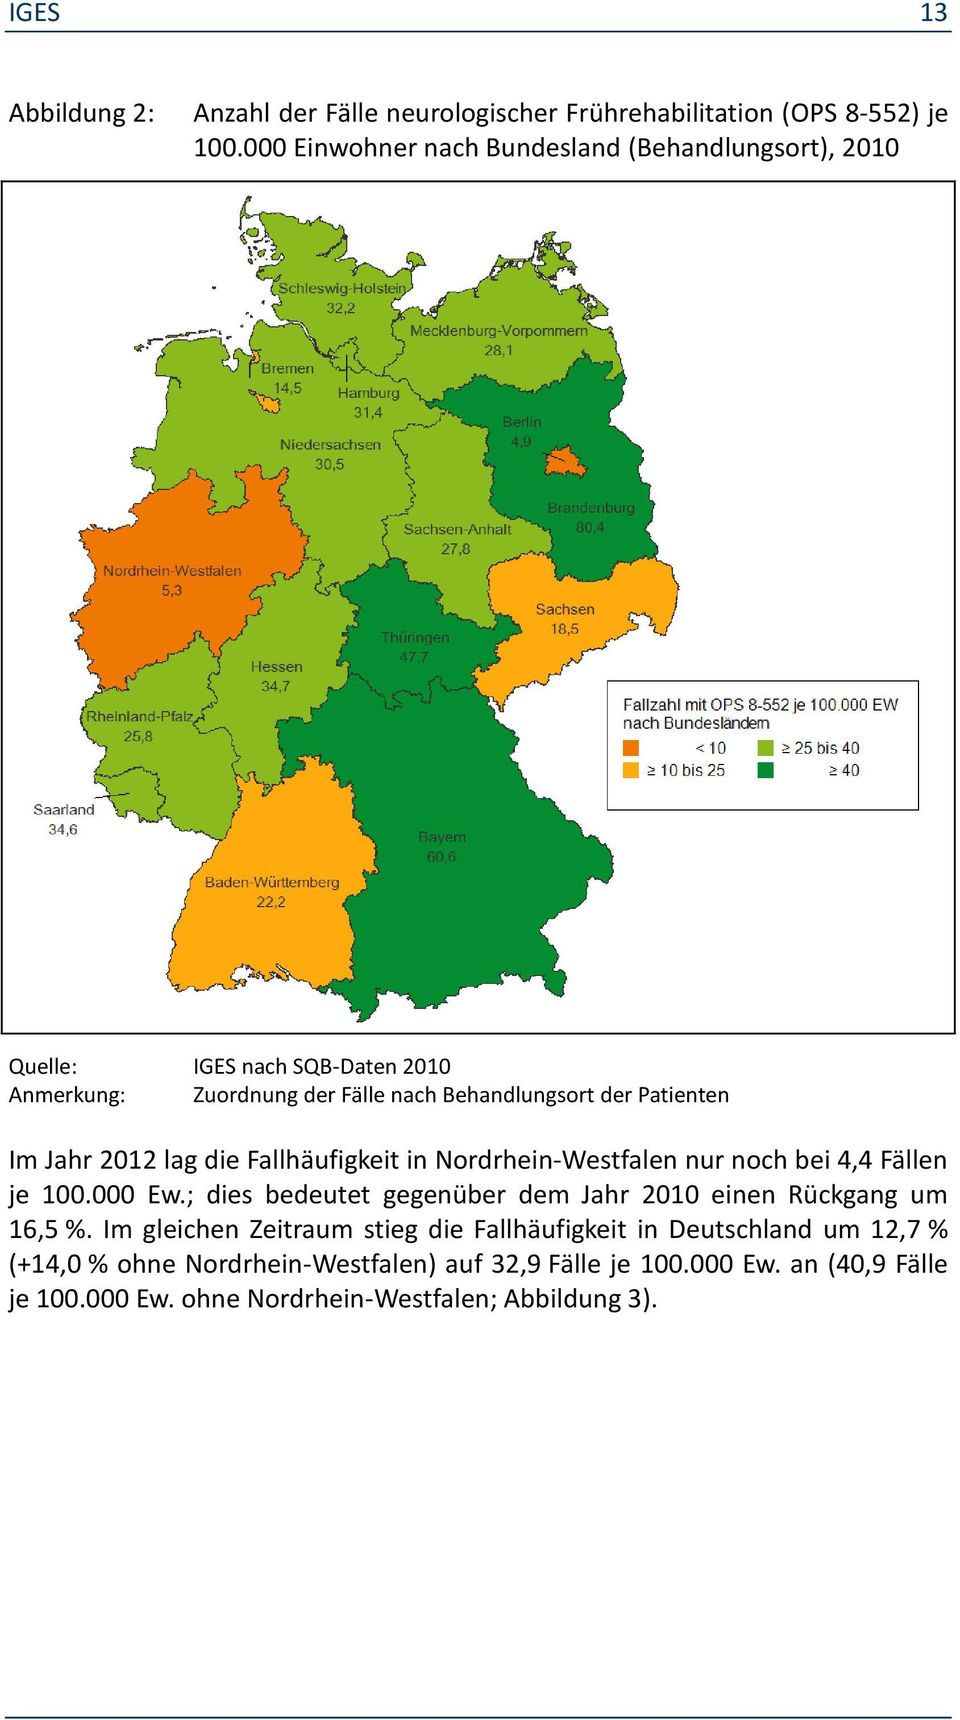 Im Jahr 2012 lag die Fallhäufigkeit in Nordrhein-Westfalen nur noch bei 4,4 Fällen je 100.000 Ew.